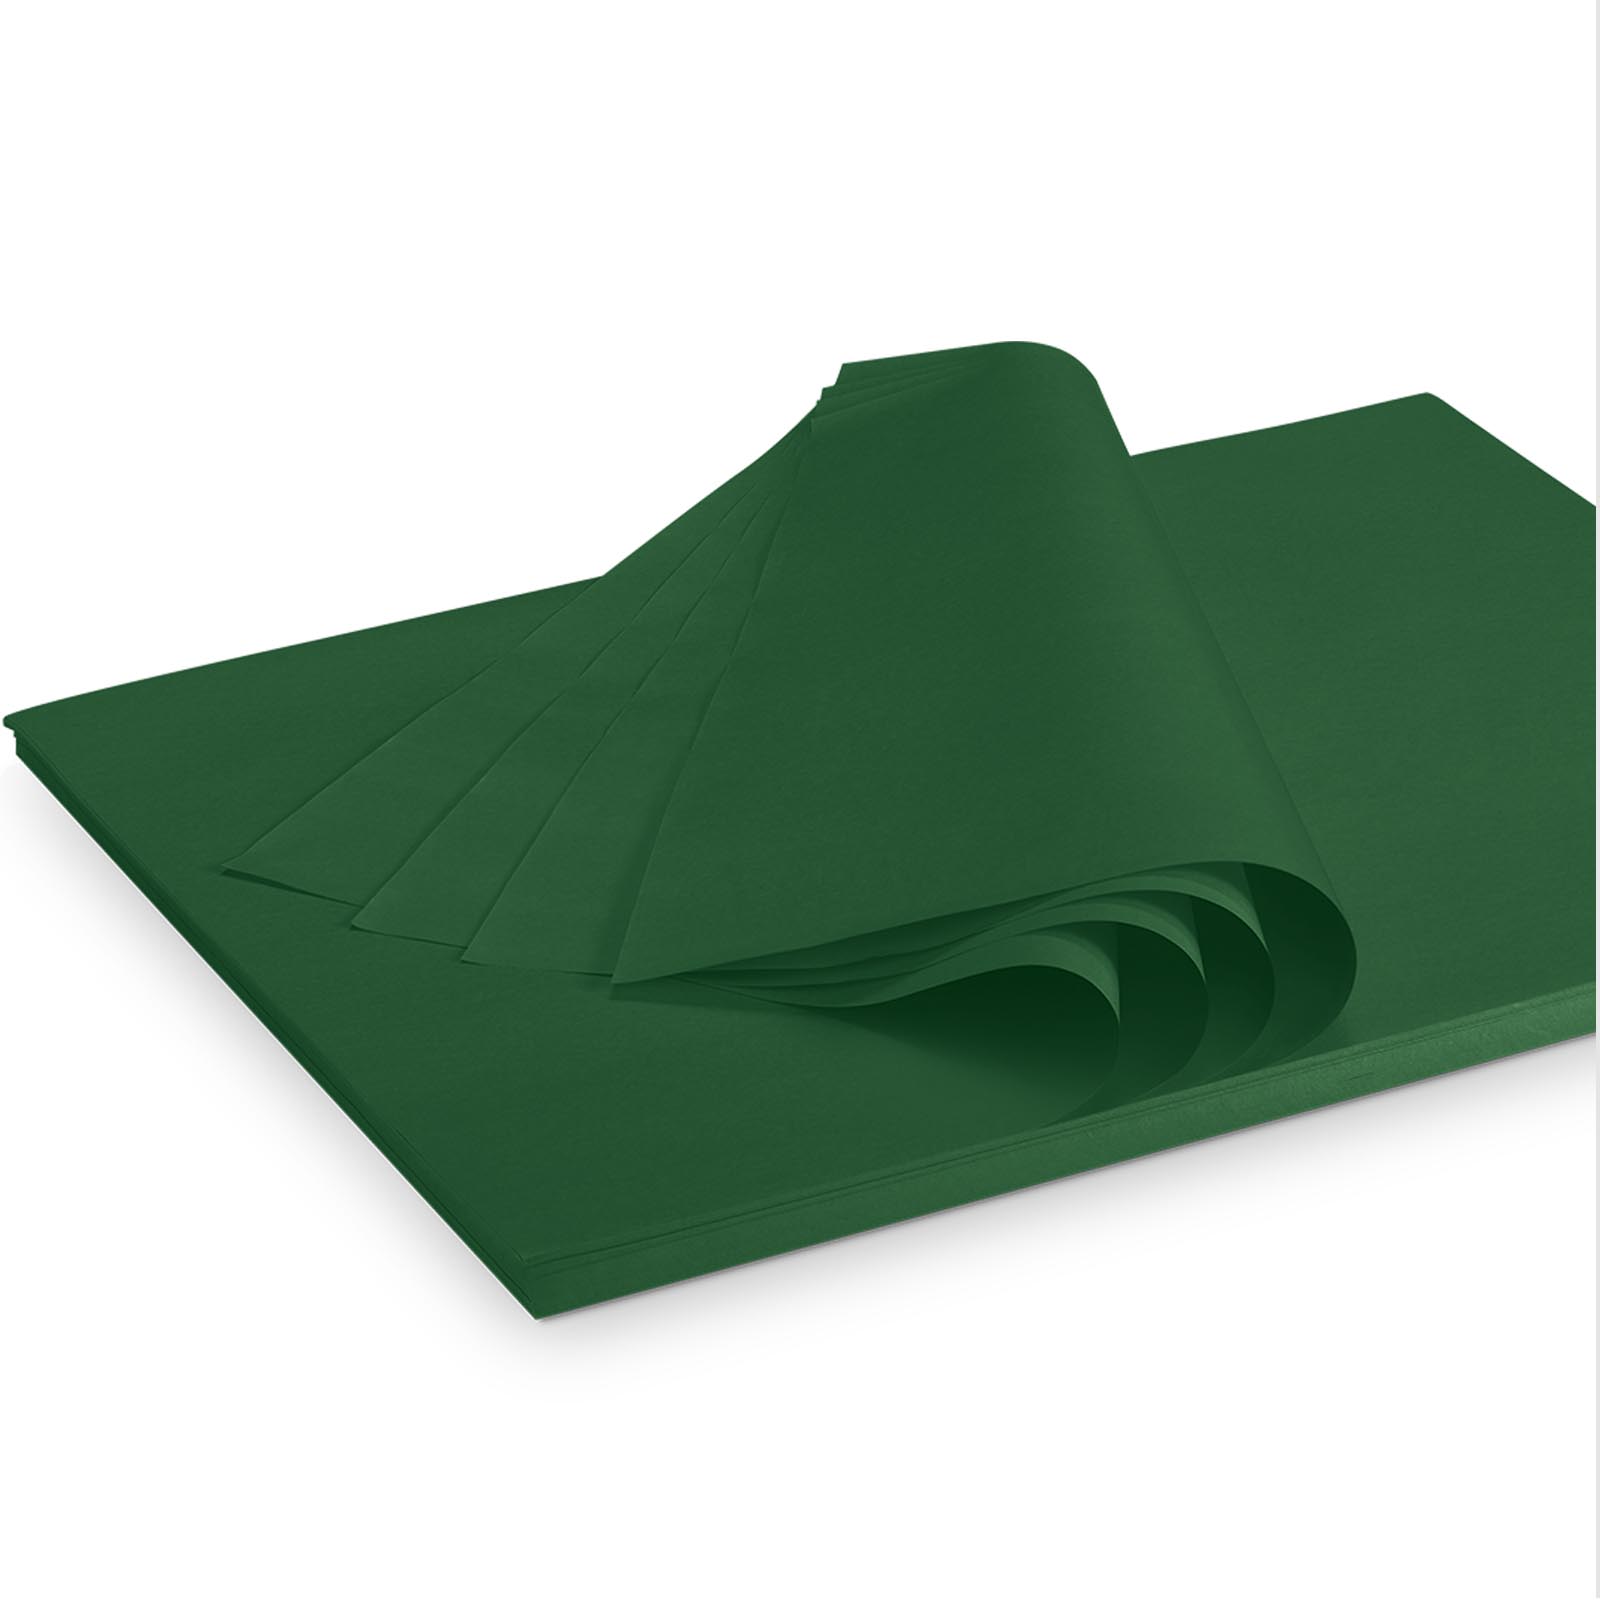 Seidenpapier 375x500mm dk-grün 35g/m²,300 Bogen/ Karton=2kg